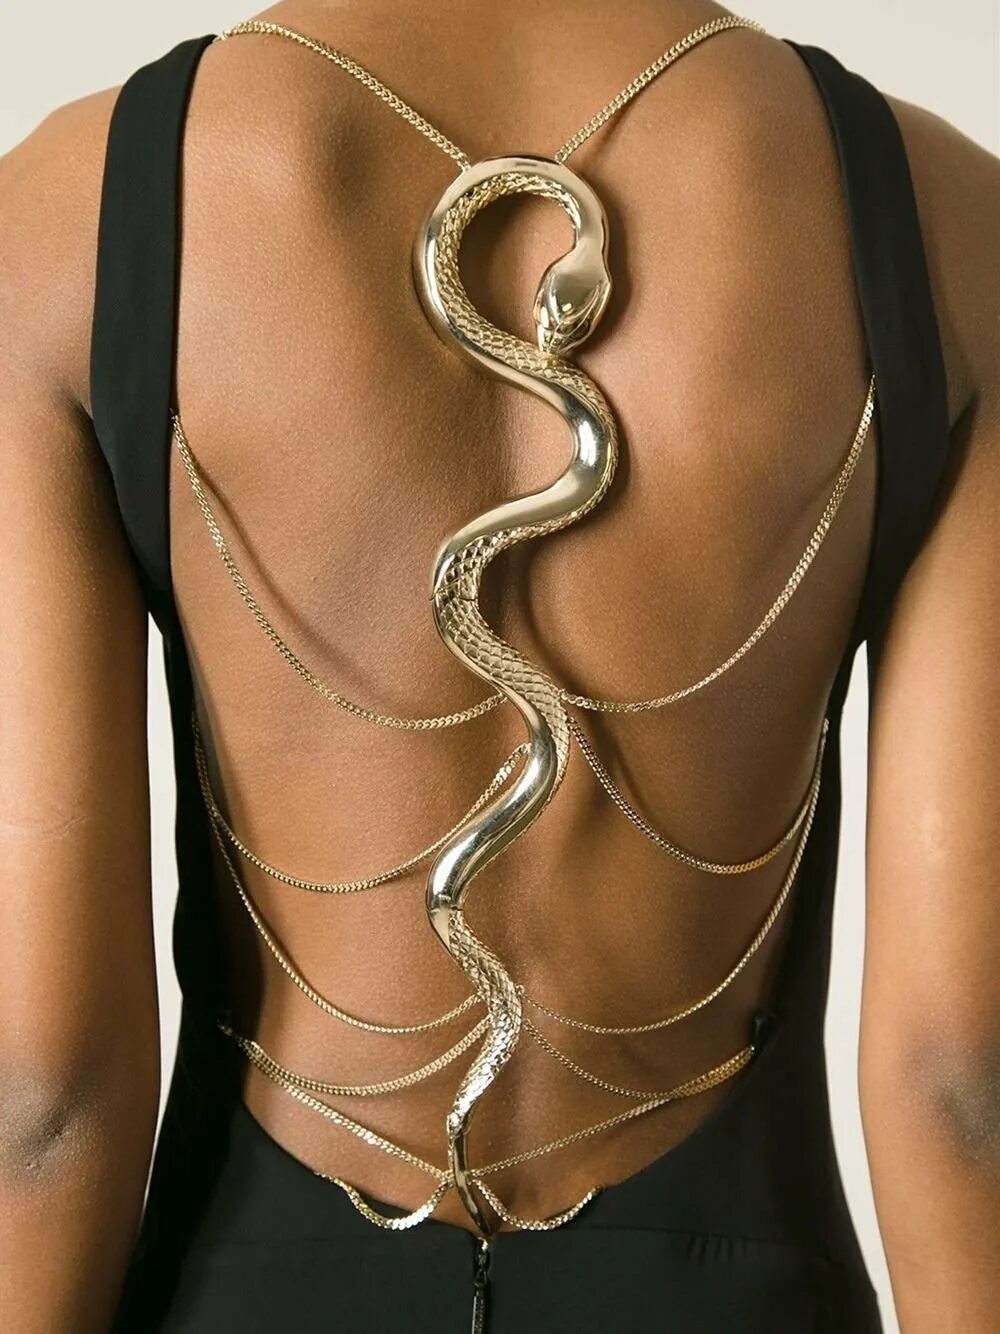 Roberto Cavalli браслет змея. Платье Roberto Cavalli со змеей. Роберто Кавалли  змейка черный. Роберто Кавалли платье со змеей на спине.